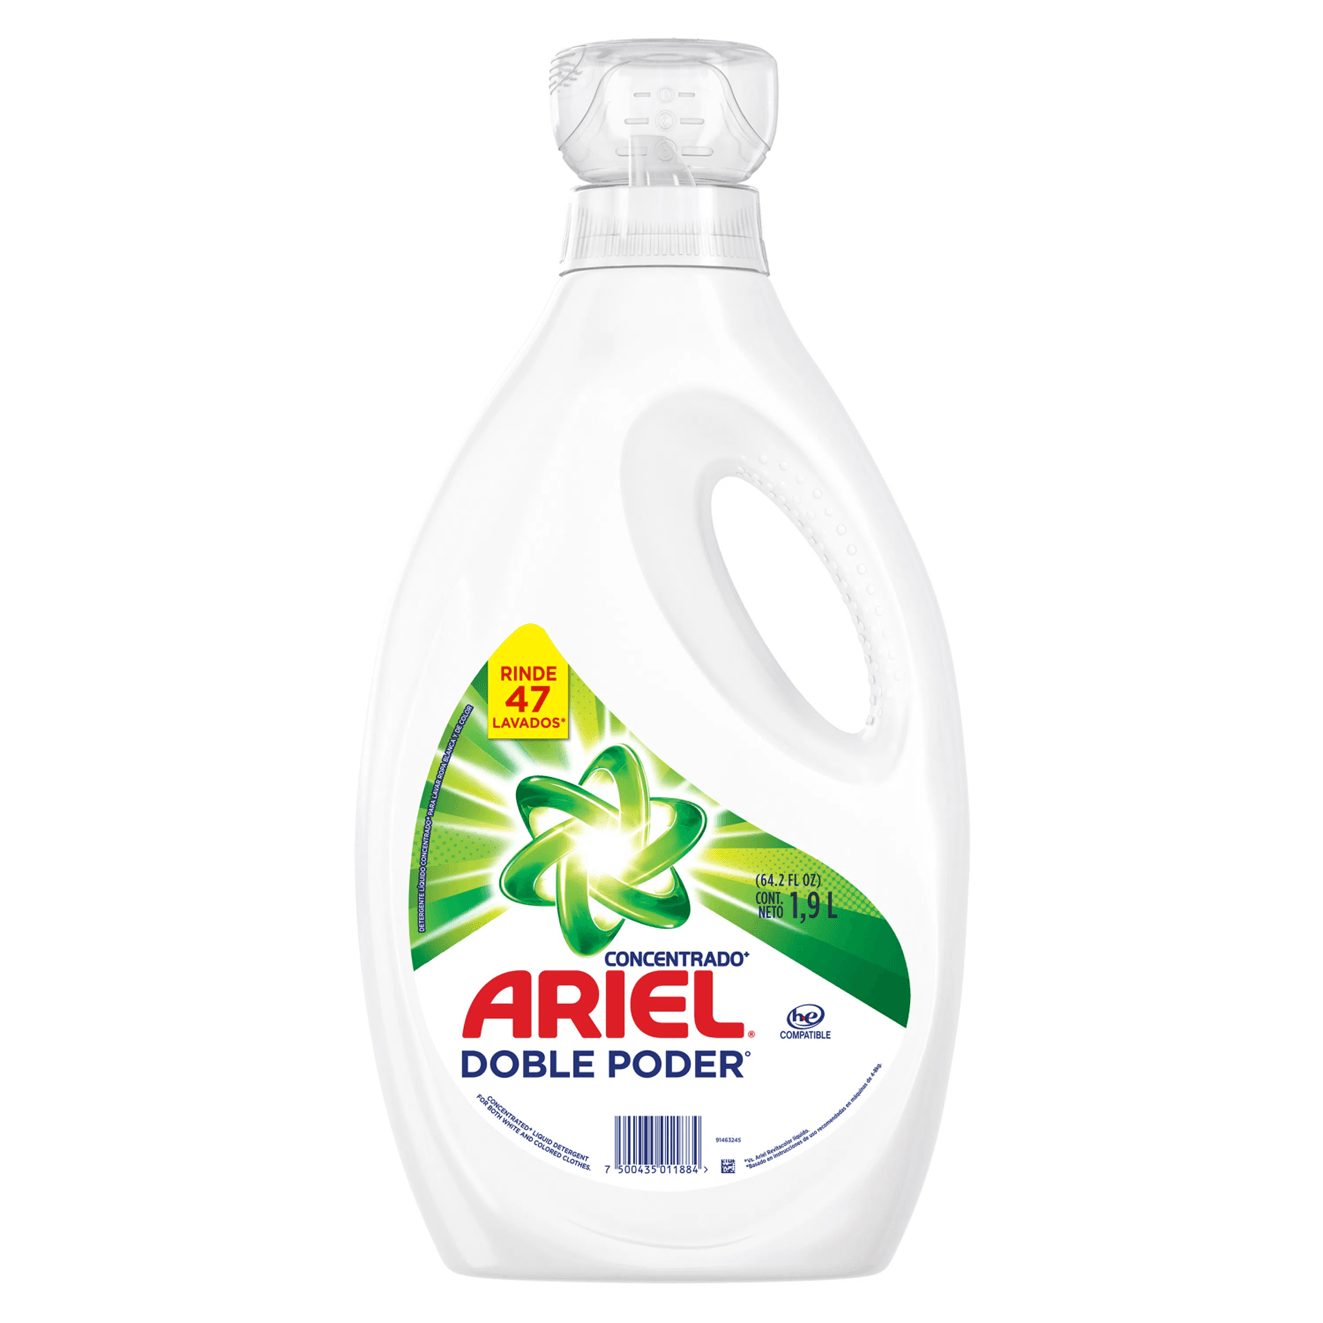 La Vaquita - Detergente Líquido Ariel Doble Poder Concentrado